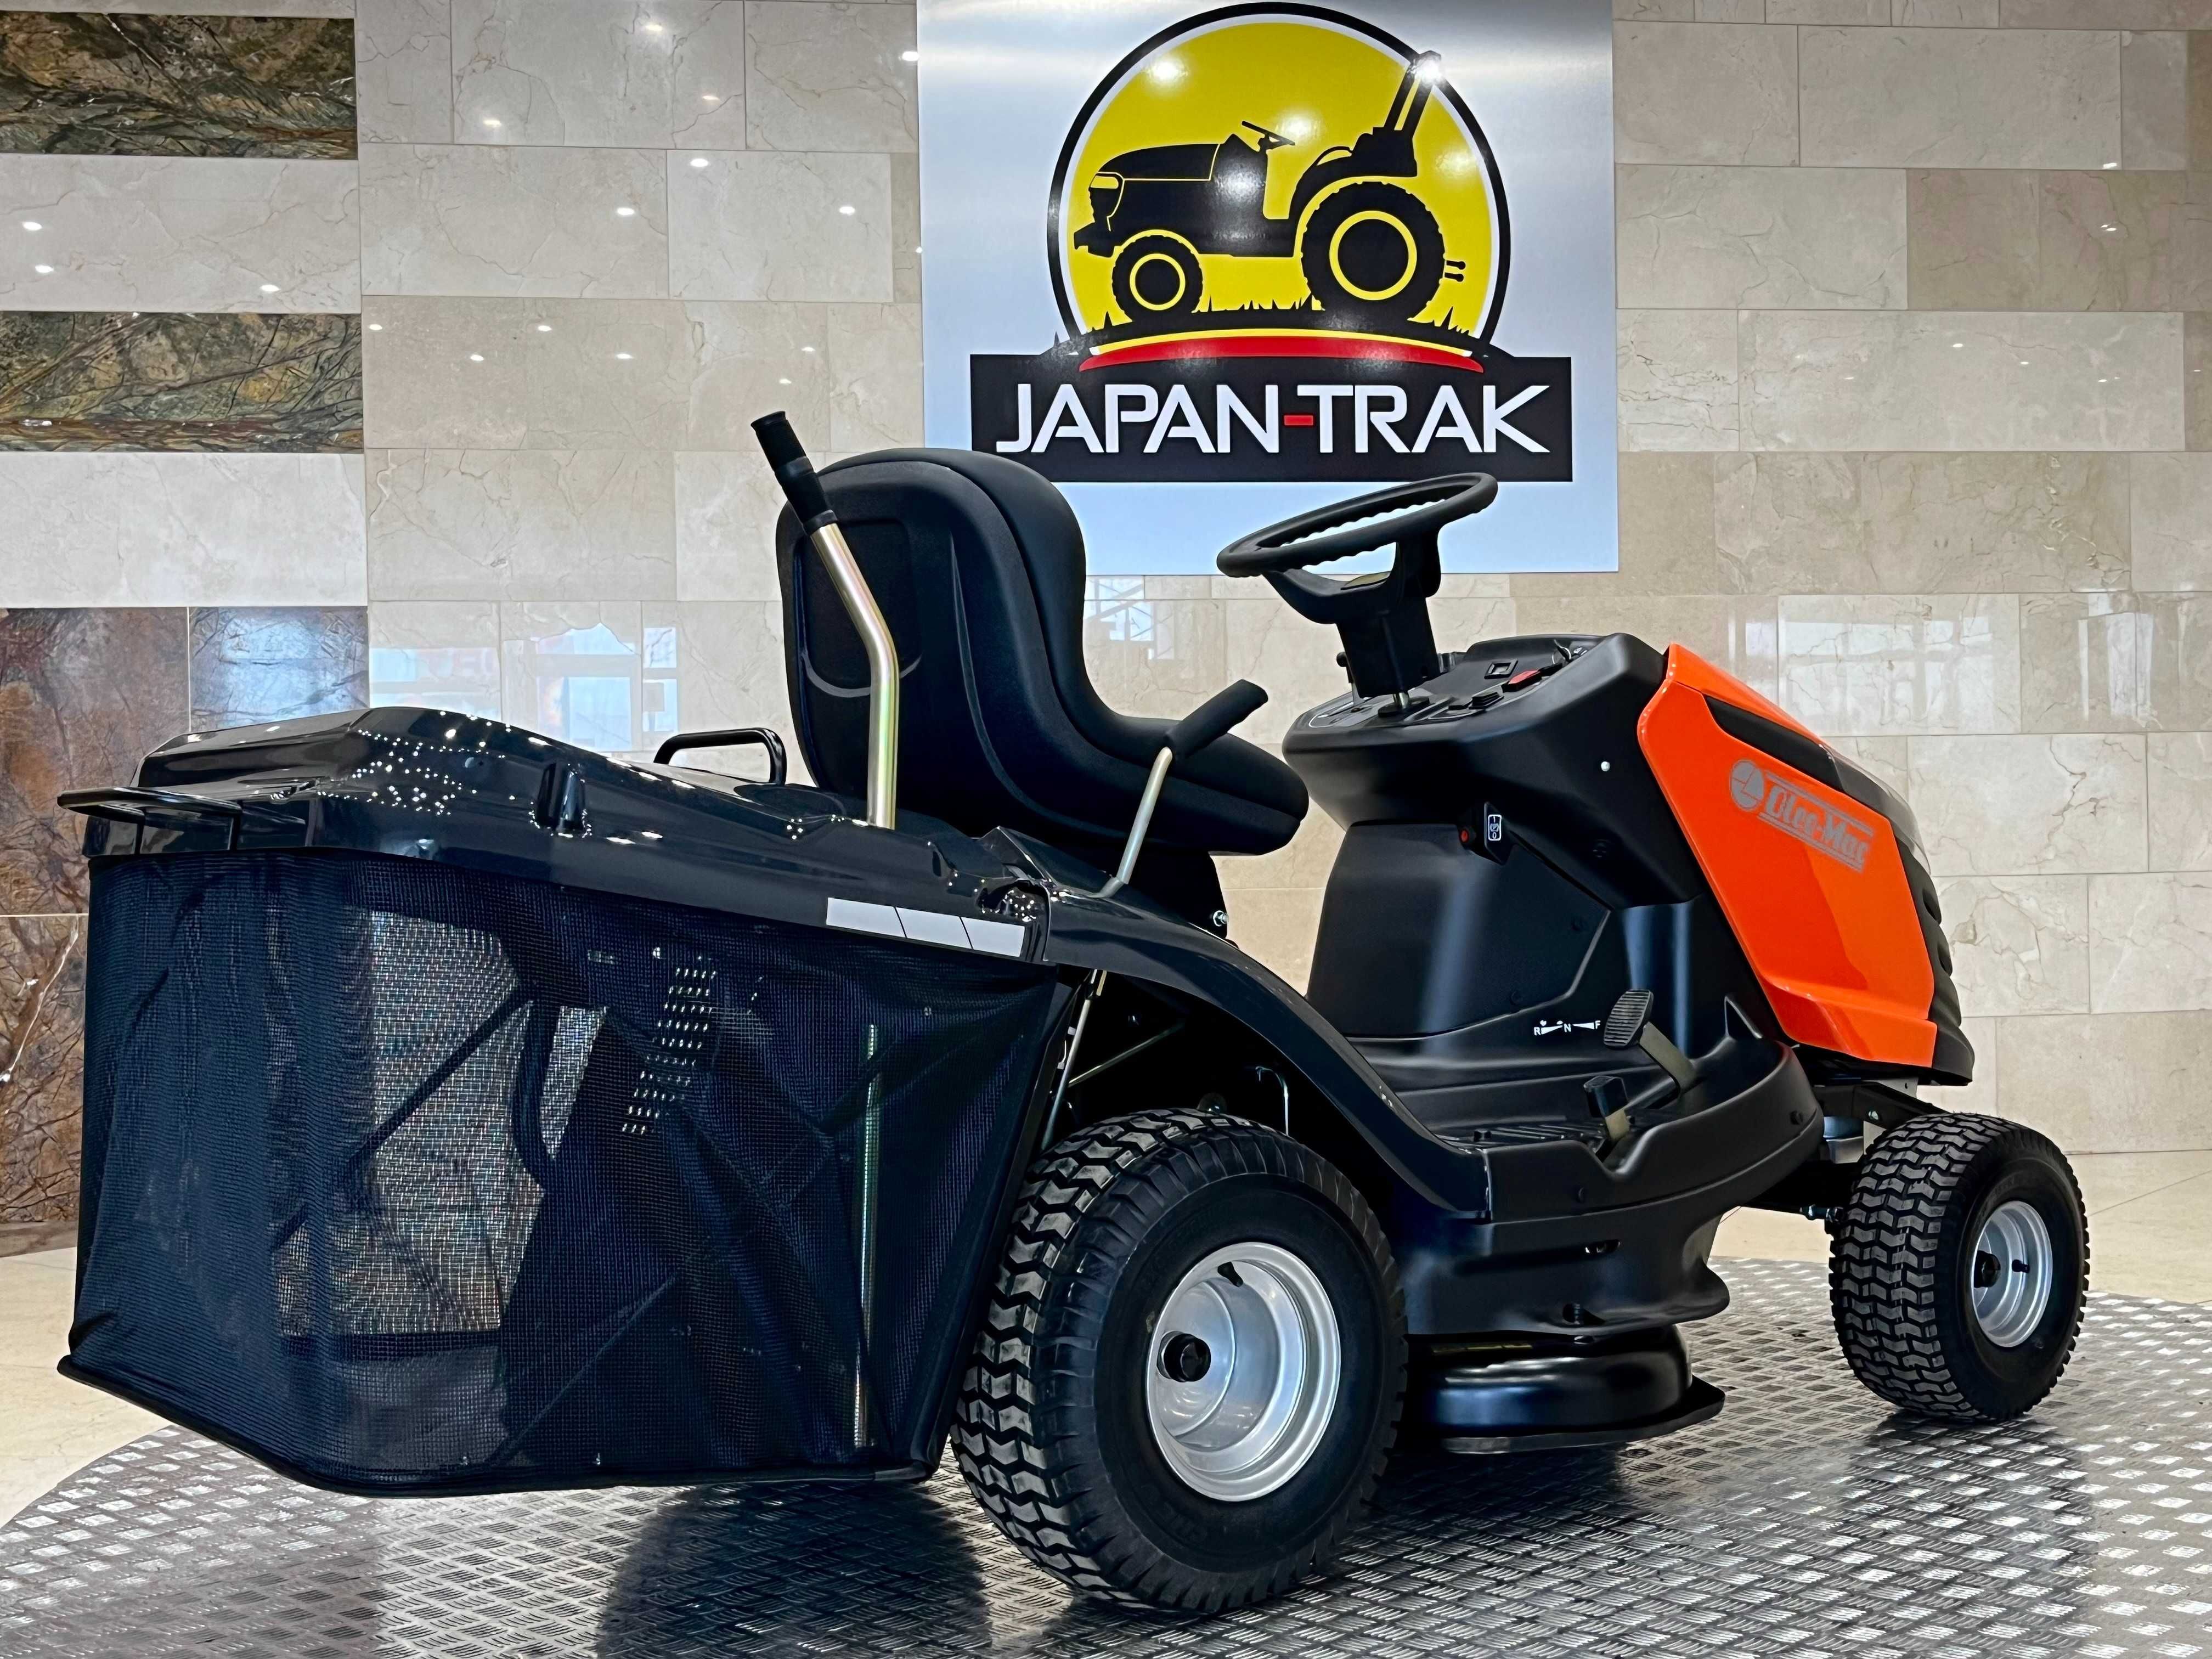 OLEO-MAC traktor kosiarka 92/16 KH 16KM, JAPAN TRAK